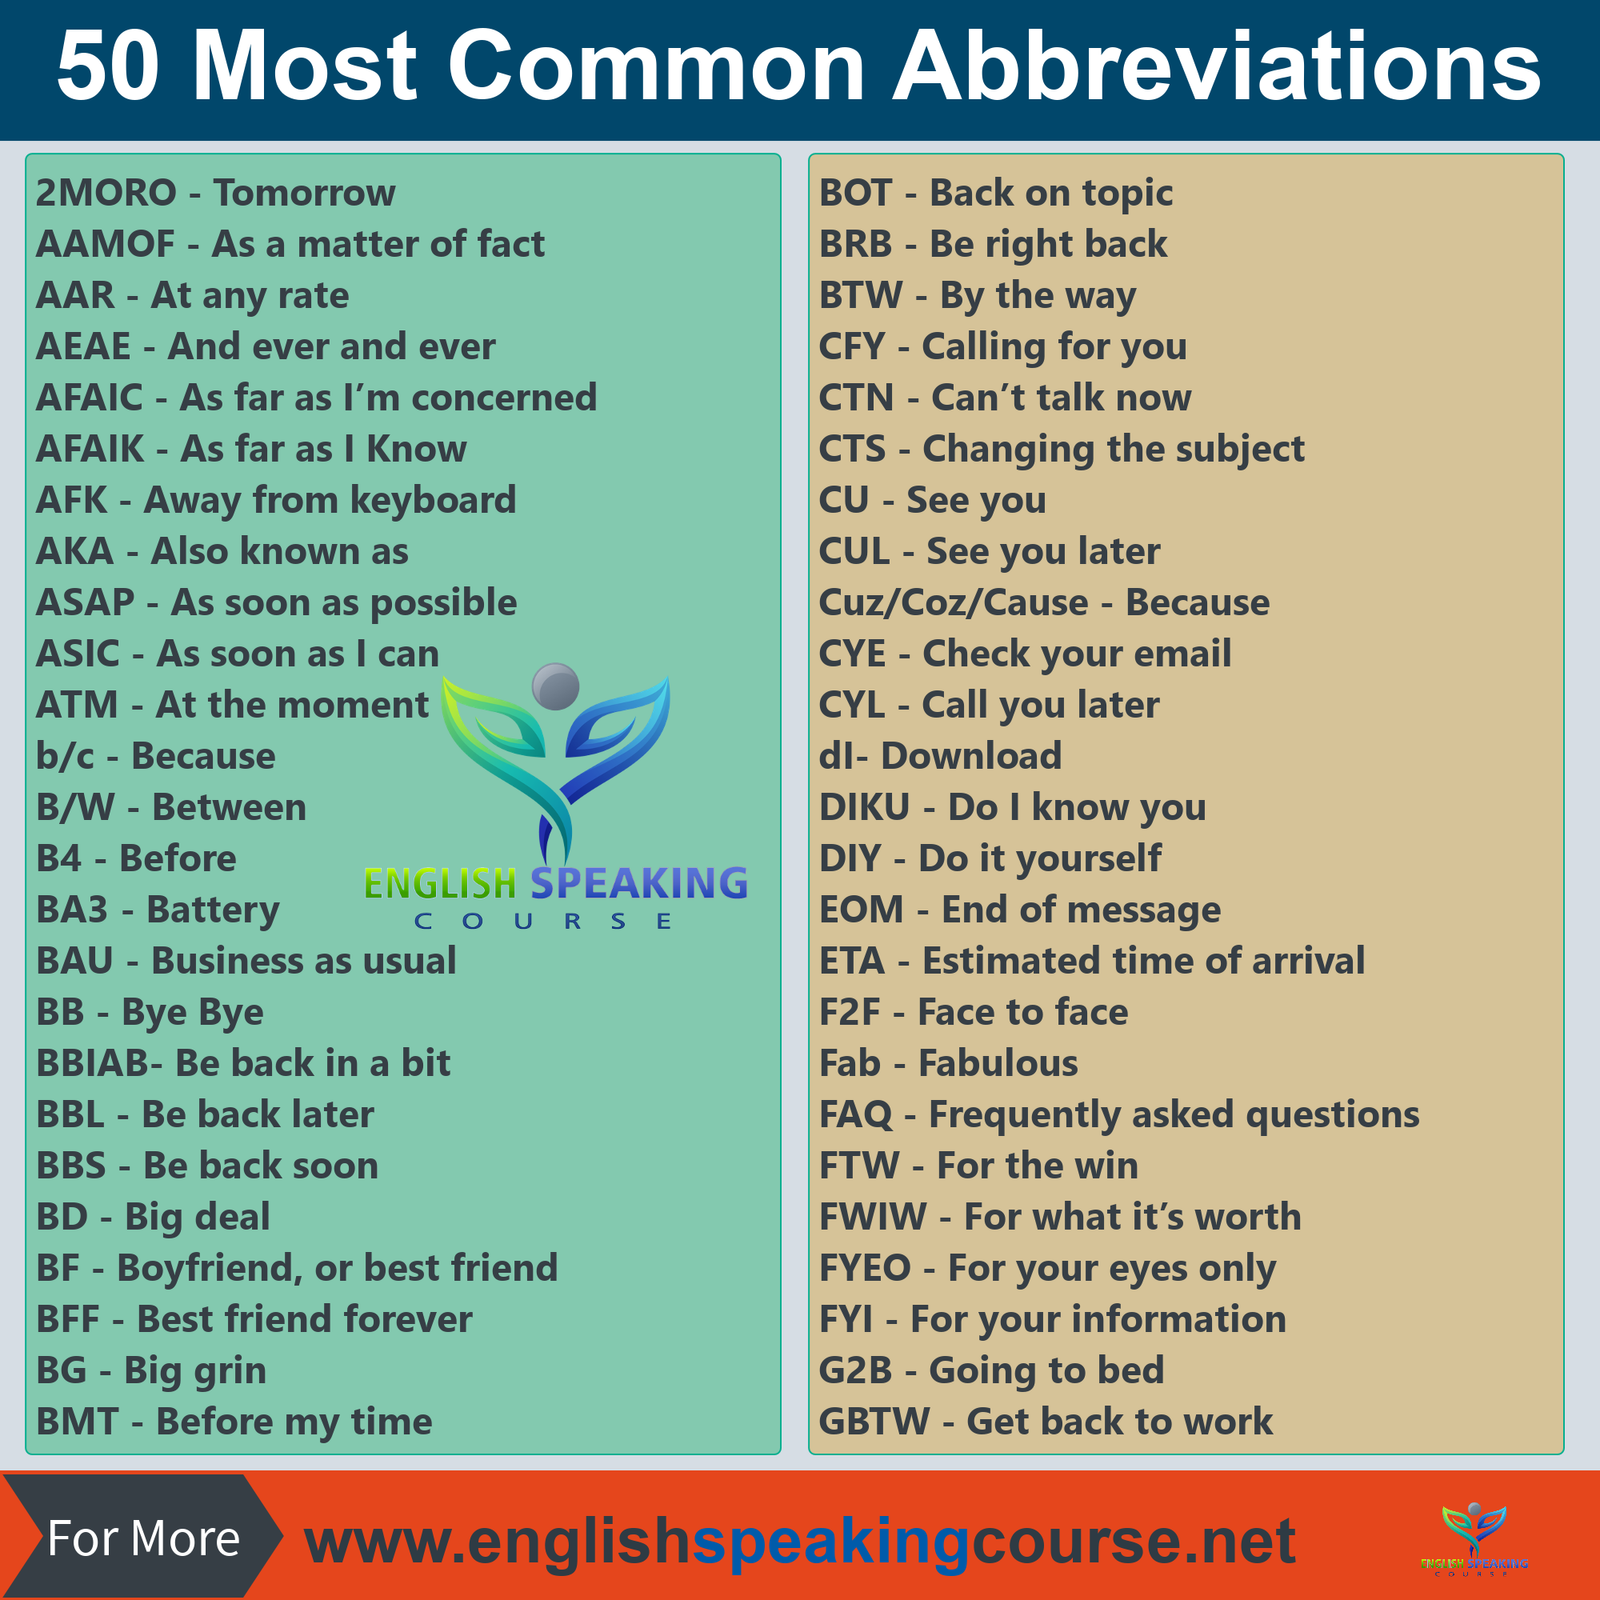 50-most-common-abbreviations-abbreviations